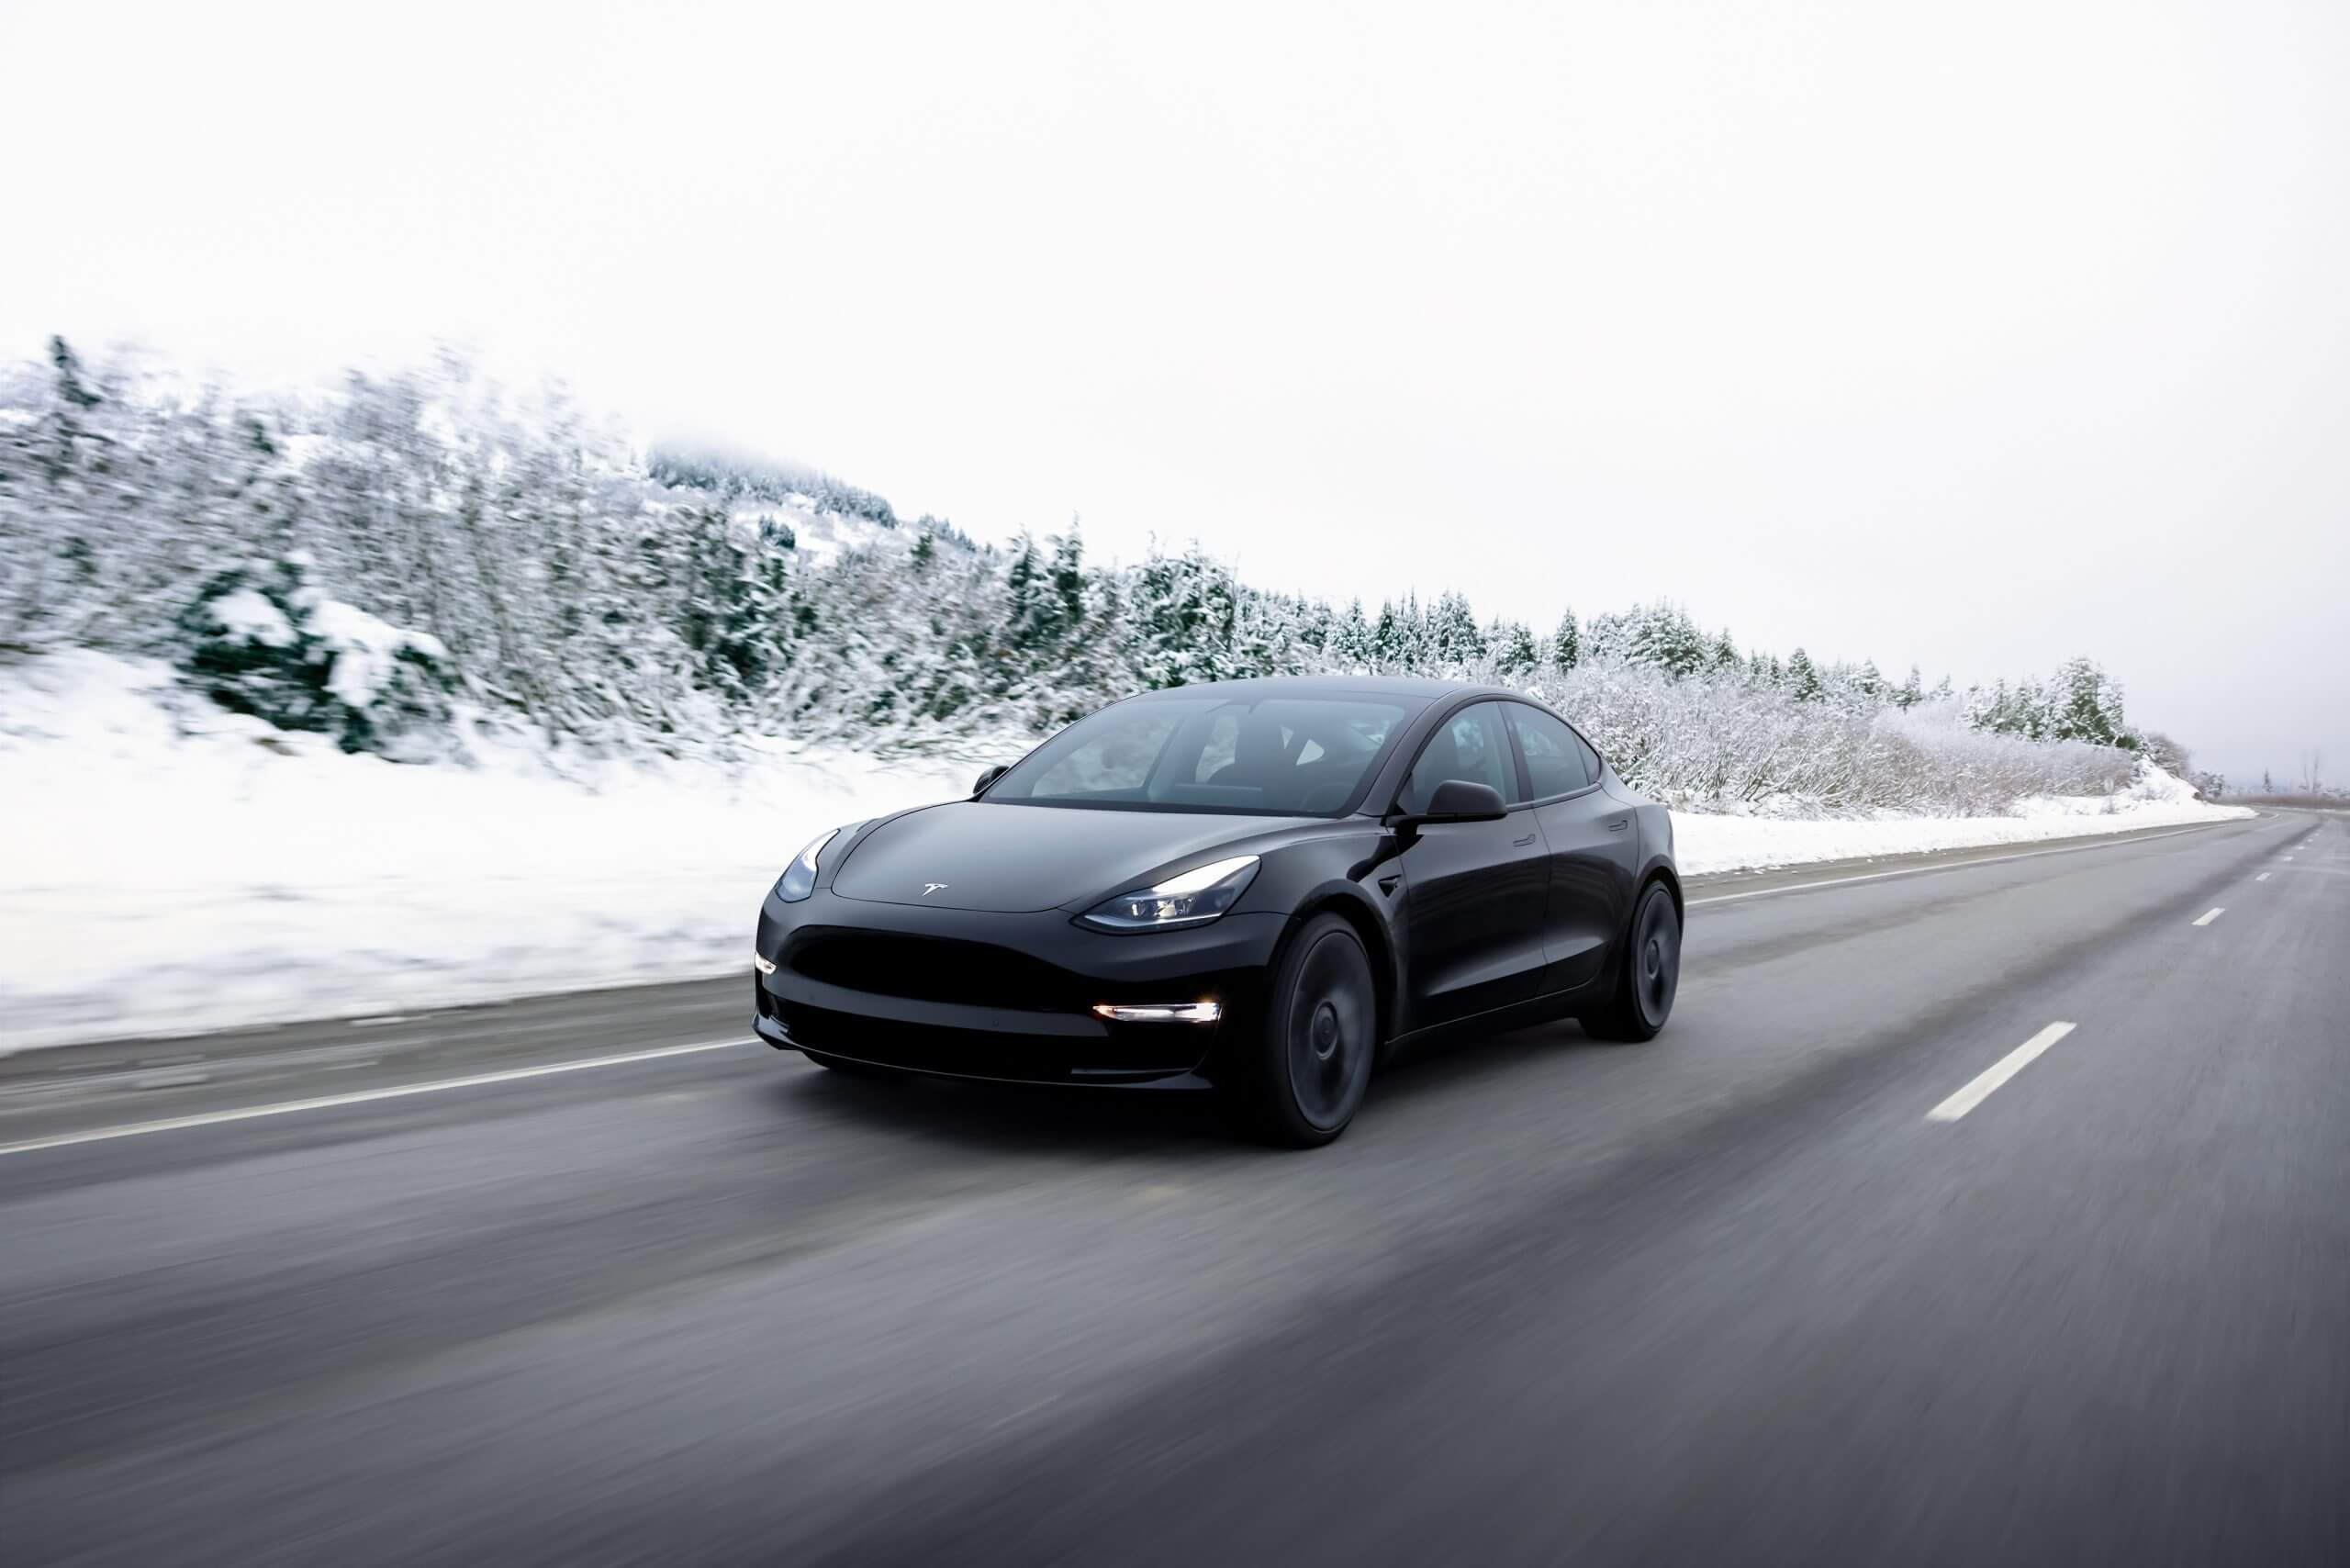 Tesla remplace les capteurs à ultrasons par Tesla Vision sur les véhicules Model 3 et Y